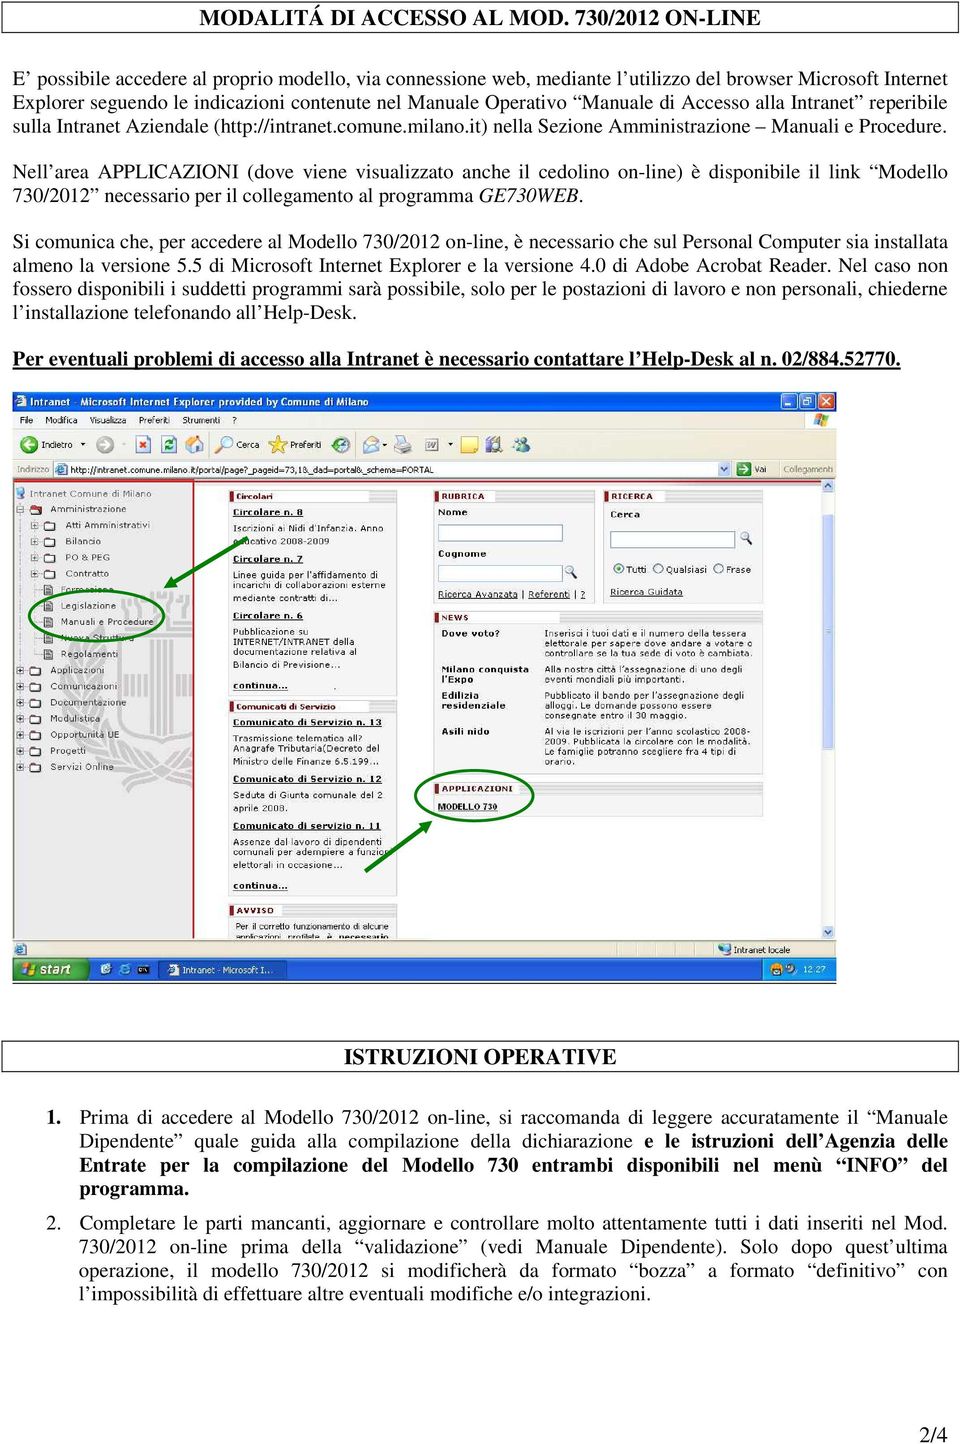 Manuale di Accesso alla Intranet reperibile sulla Intranet Aziendale (http://intranet.comune.milano.it) nella Sezione Amministrazione Manuali e Procedure.